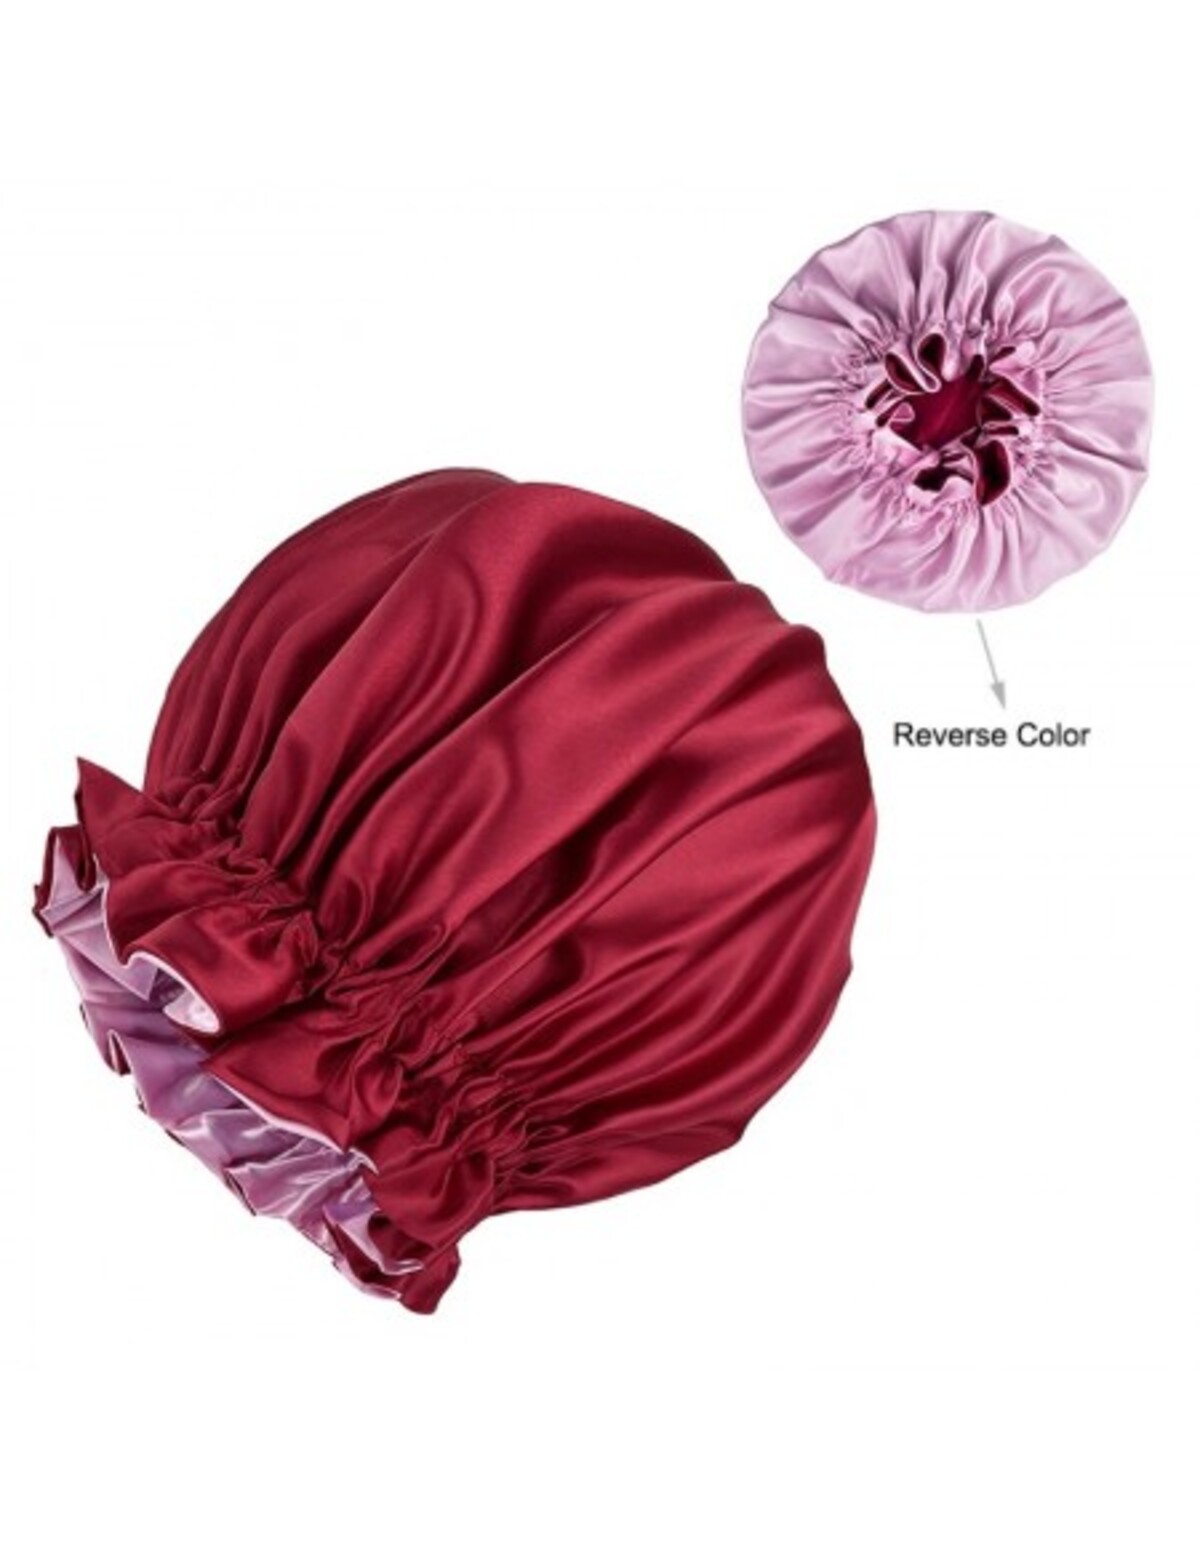 Satin Hair Bonnetabs je obojstranná saténová čiapka na kučeravé vlasy s gumičkou. Ideálna na spánok, cez noc neprídeš ani o tvar, ani o objem. Cena: okolo 10 €